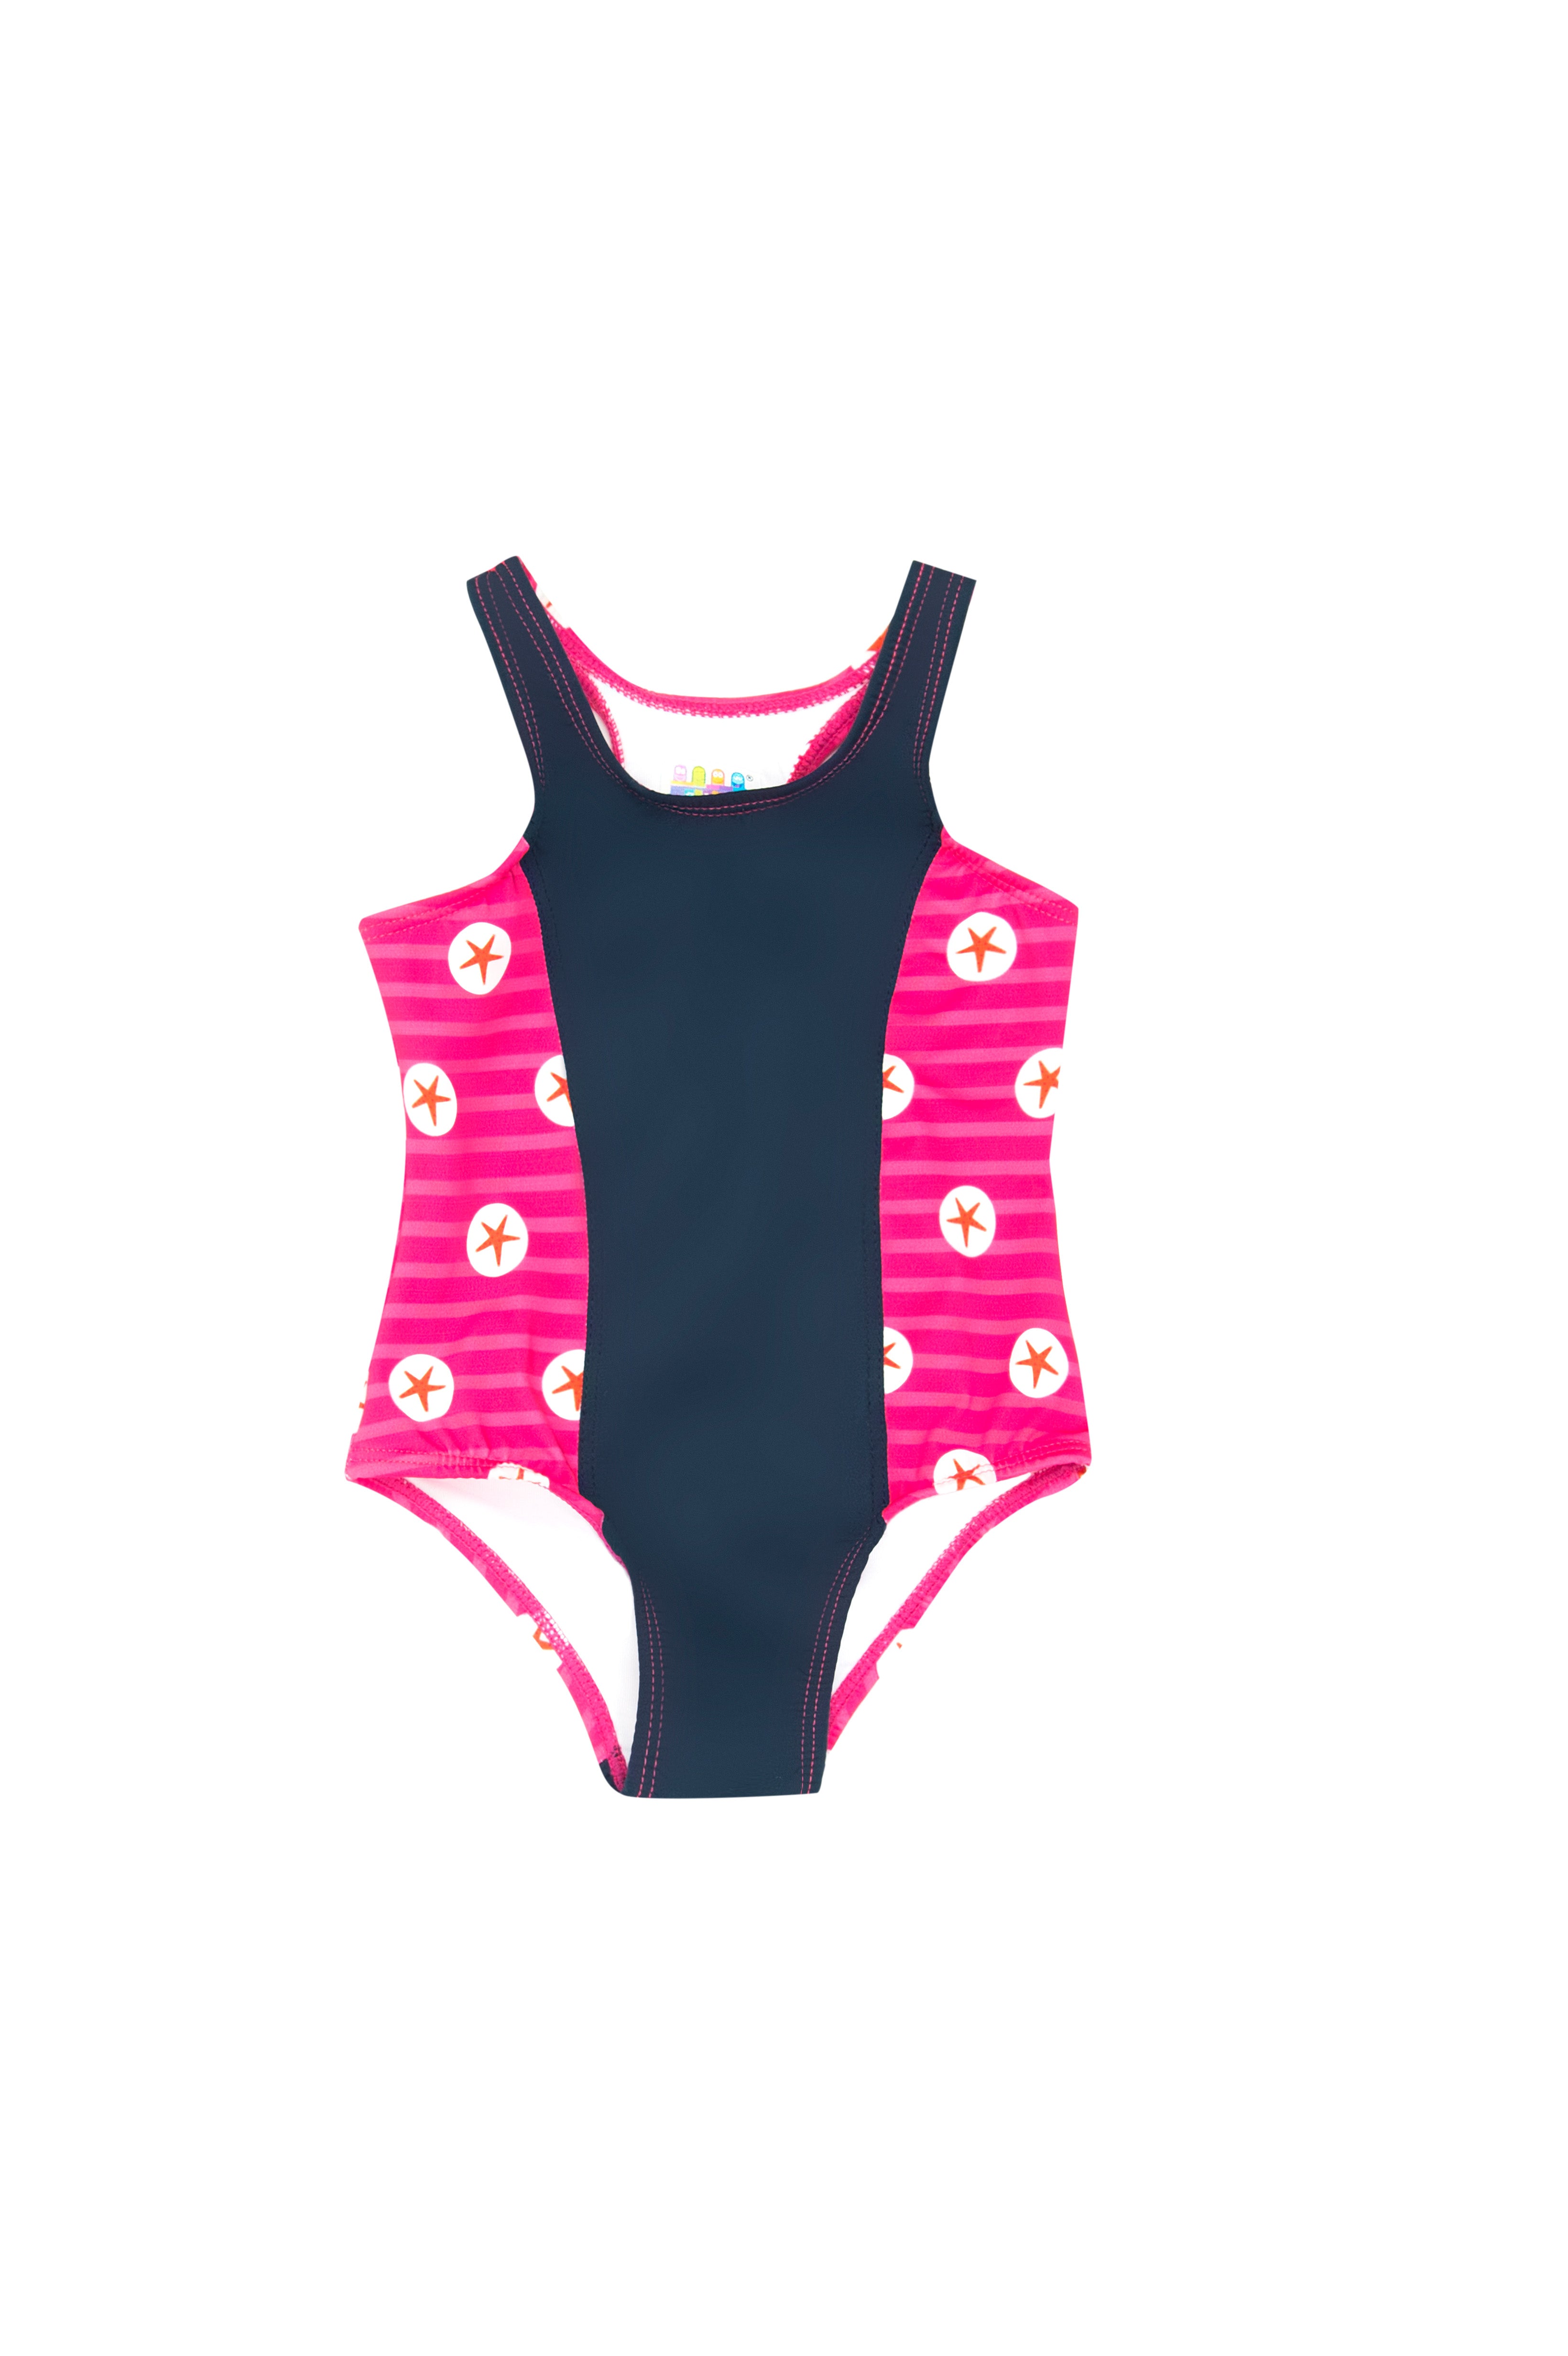 Vestido de baño enterizo para bebé multicolor con estampado navy star - Ref 406